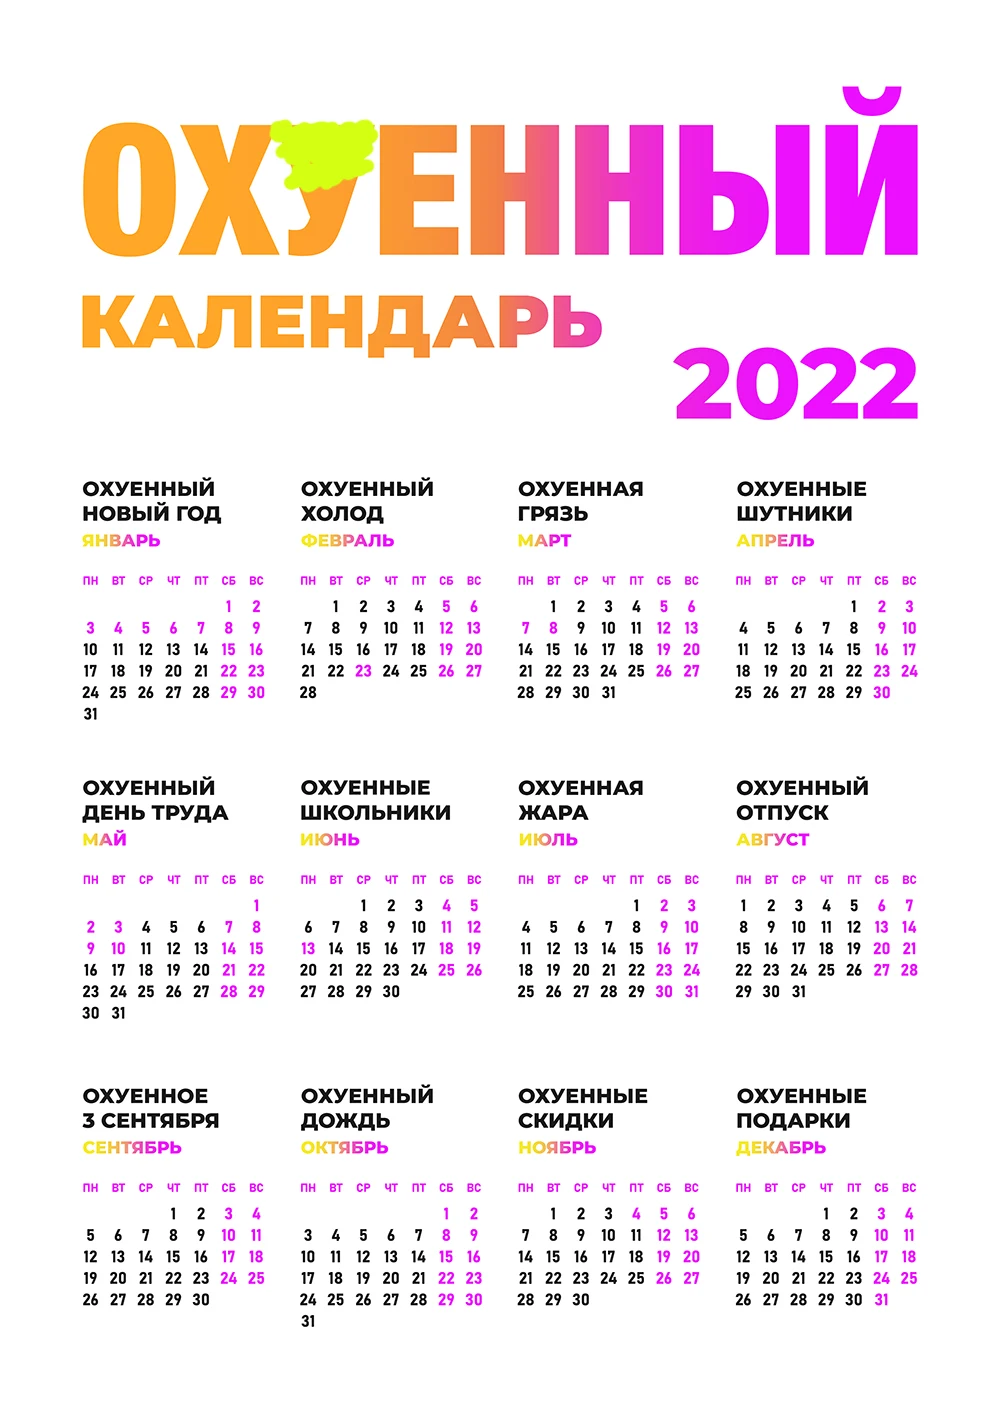 Купить настенный &quotАхуенный календарь на 2022 год для подарка с ахуенными